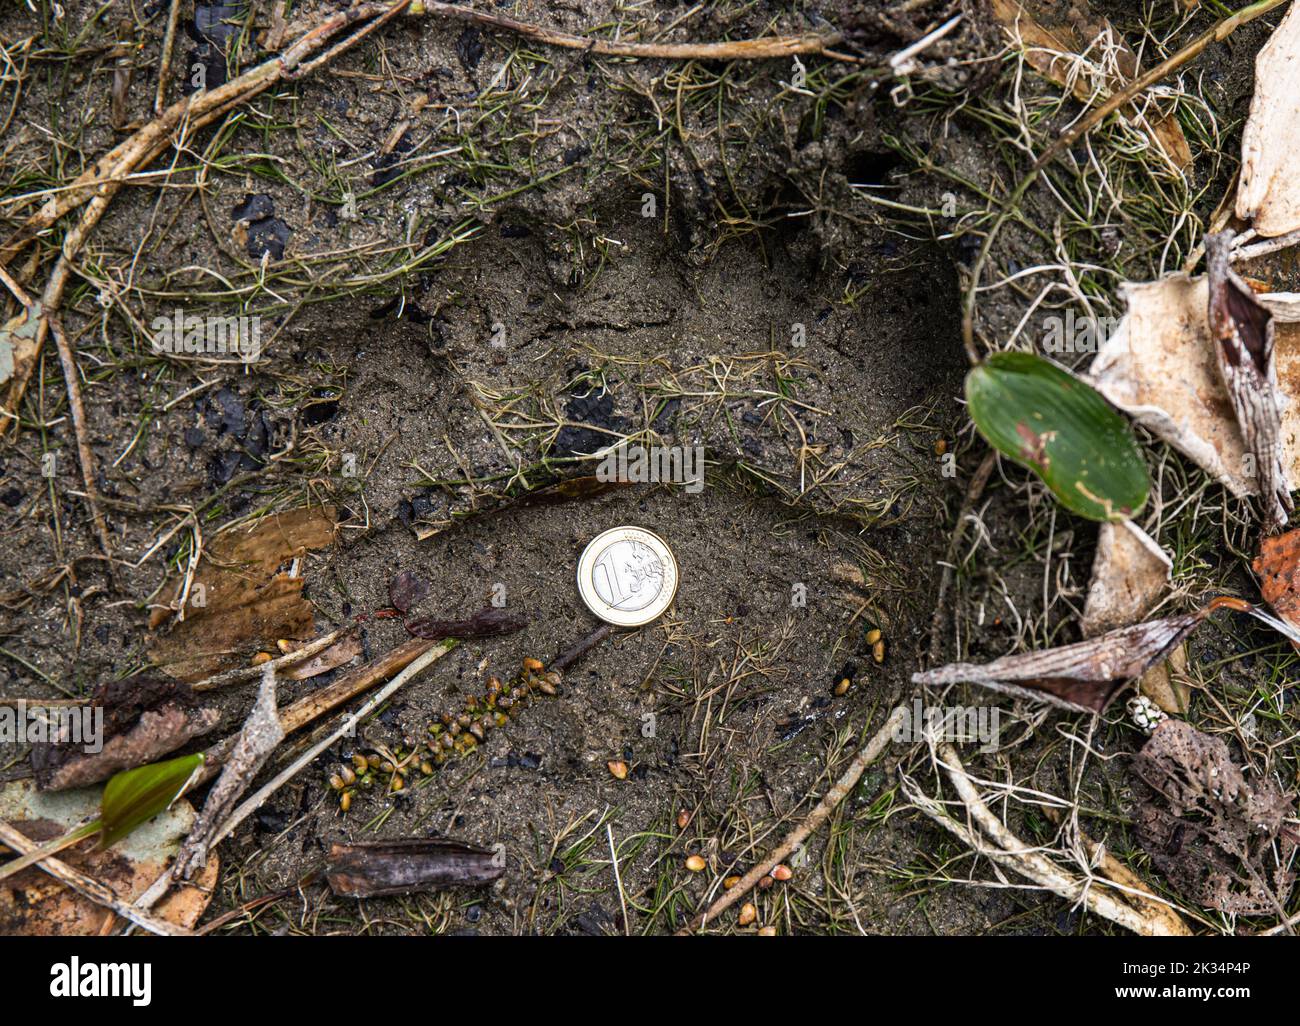 Ursus arctos bekannt als Braunbär-Fußprint im Schlamm im Wald mit 1-Euro-Münze für Maßstab. Sind vielleicht Jungen, nicht sicher. Gefunden im Herbst im September. Stockfoto